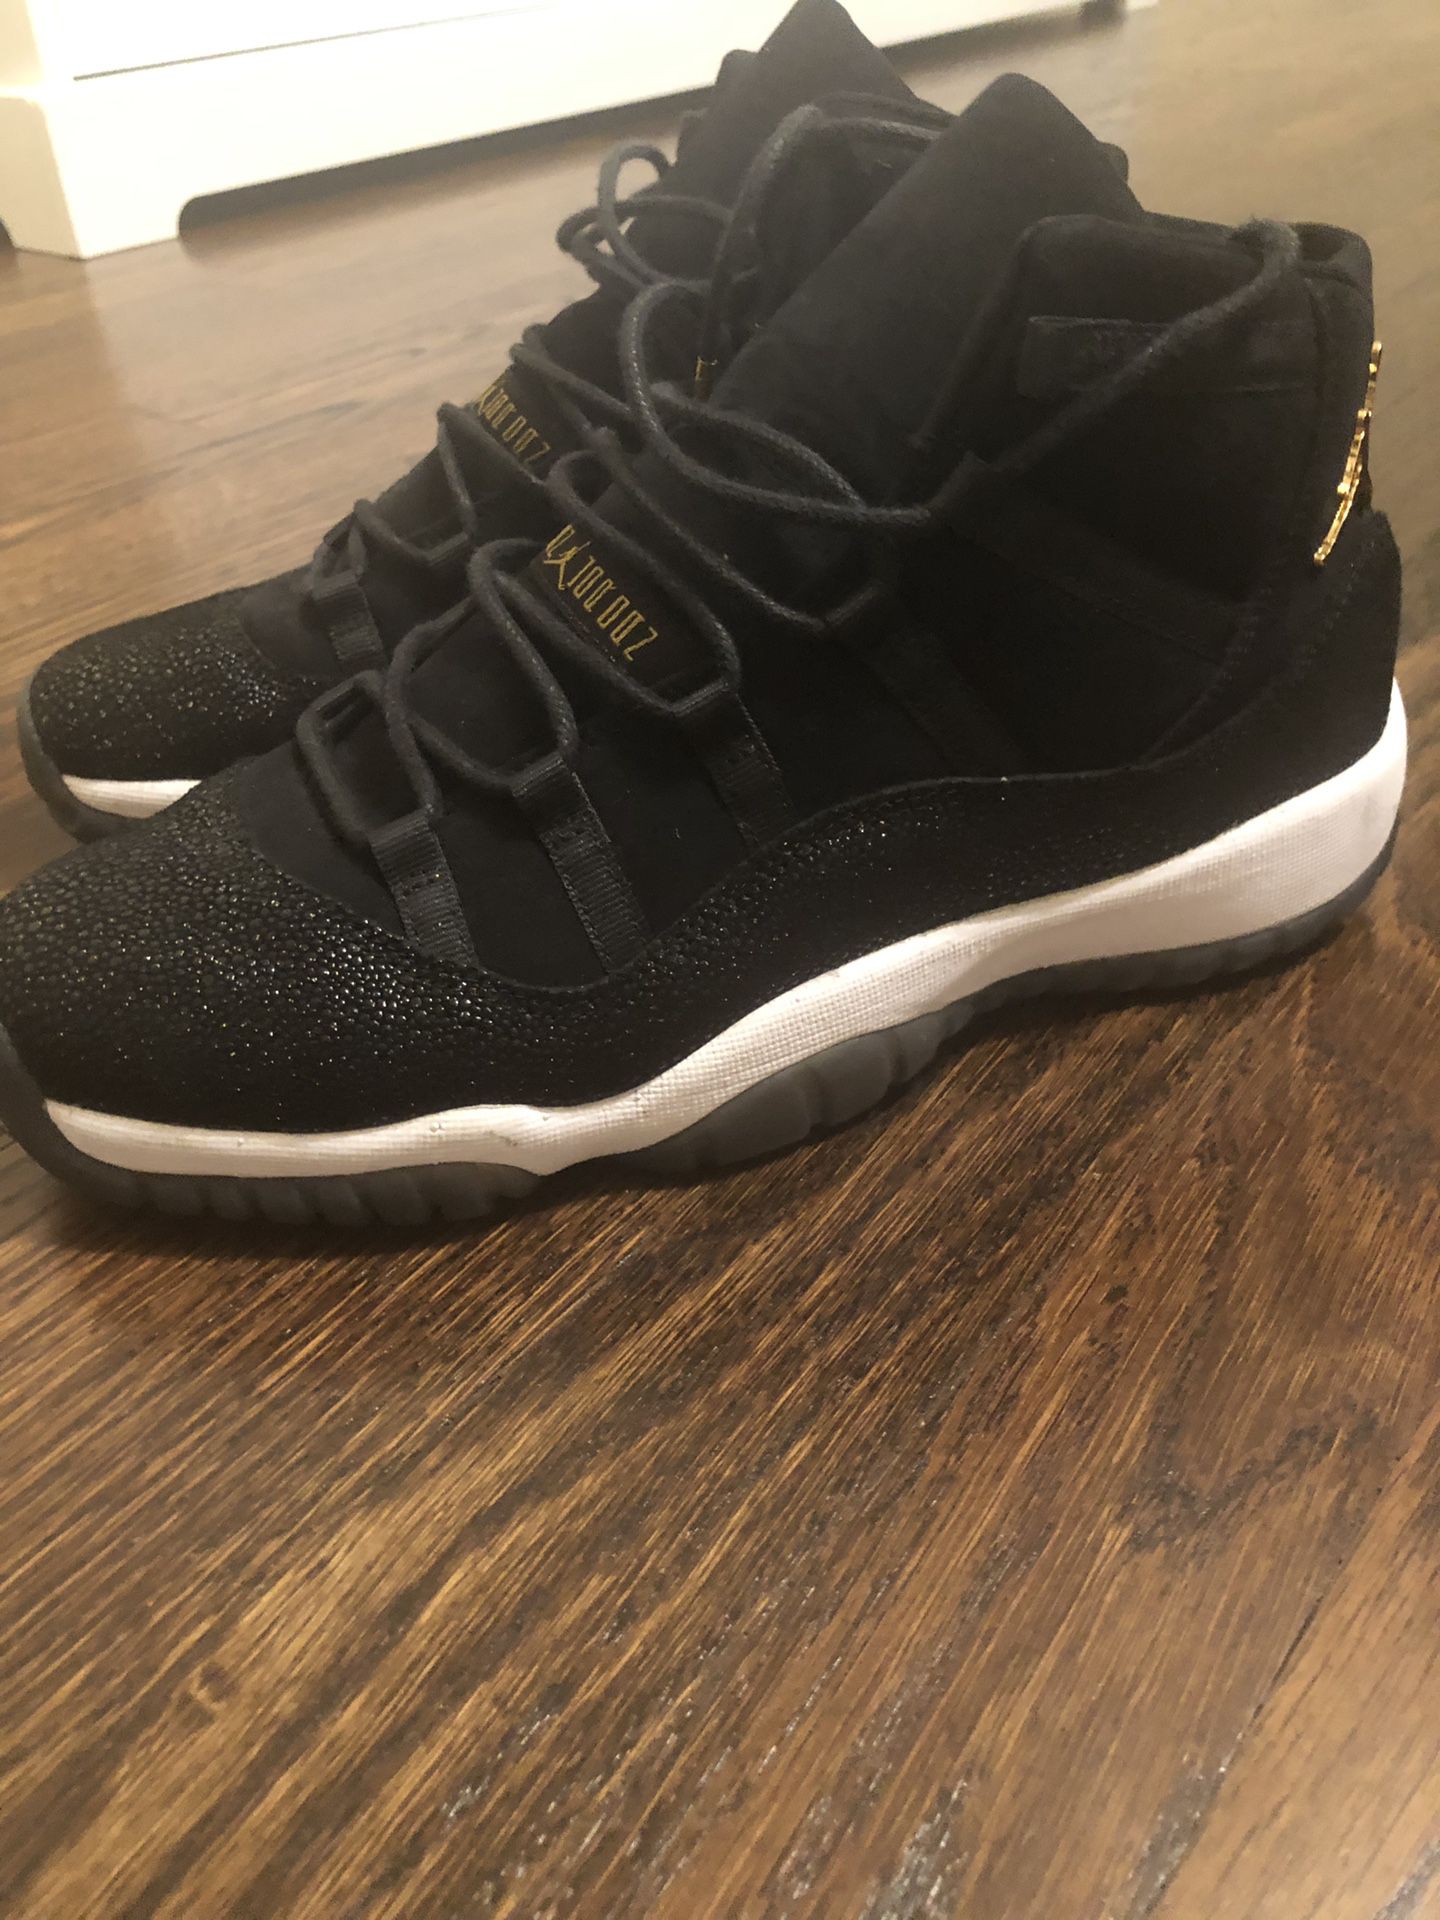 Jordan 11 size 9